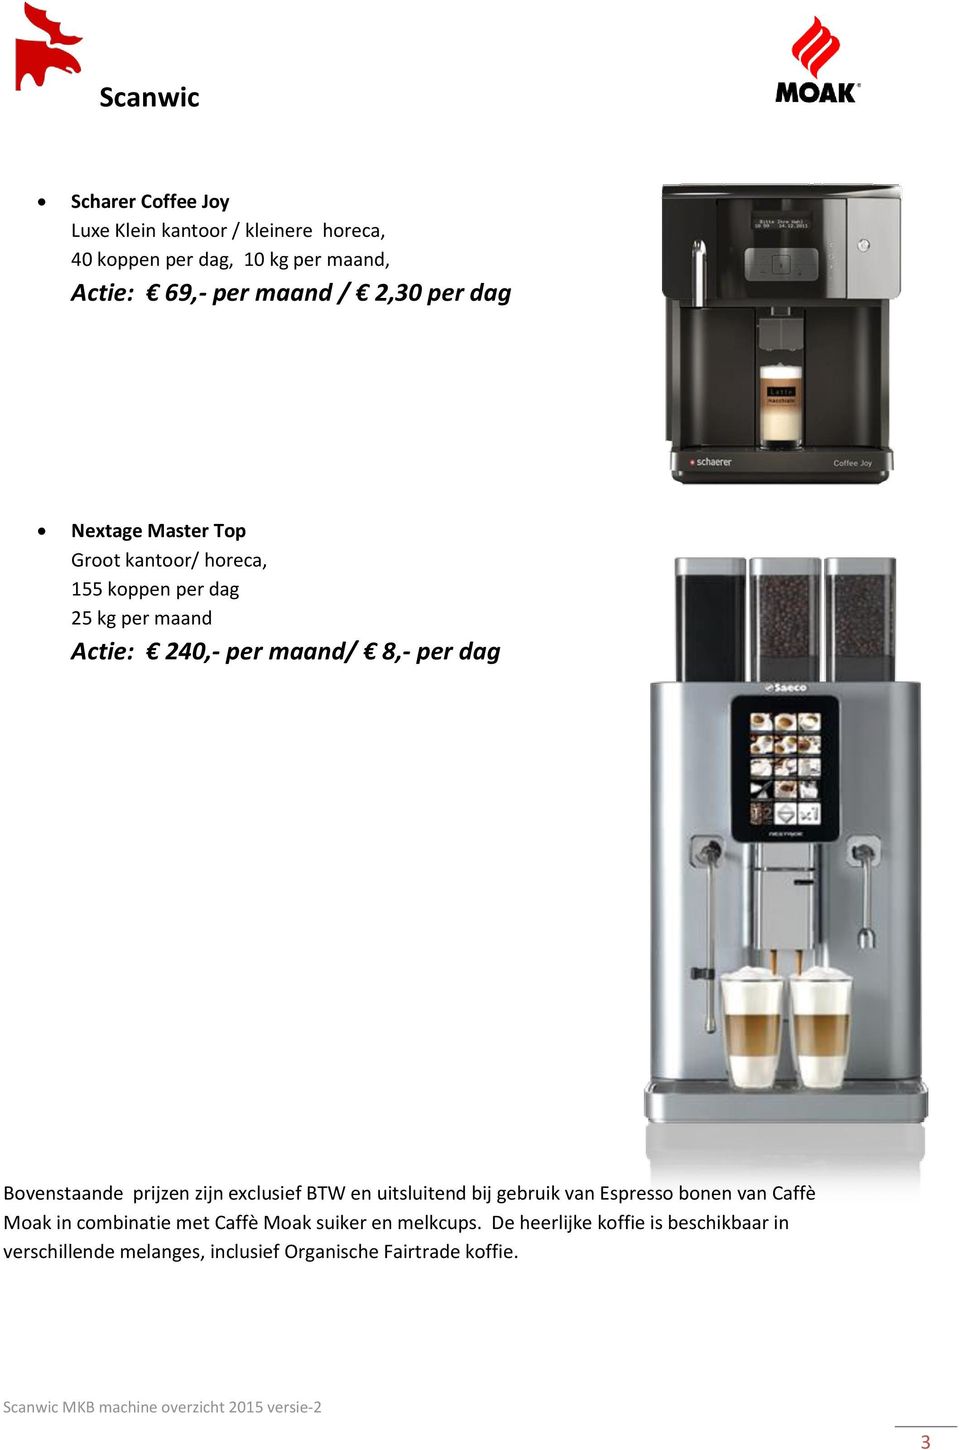 Bovenstaande prijzen zijn exclusief BTW en uitsluitend bij gebruik van Espresso bonen van Caffè Moak in combinatie met